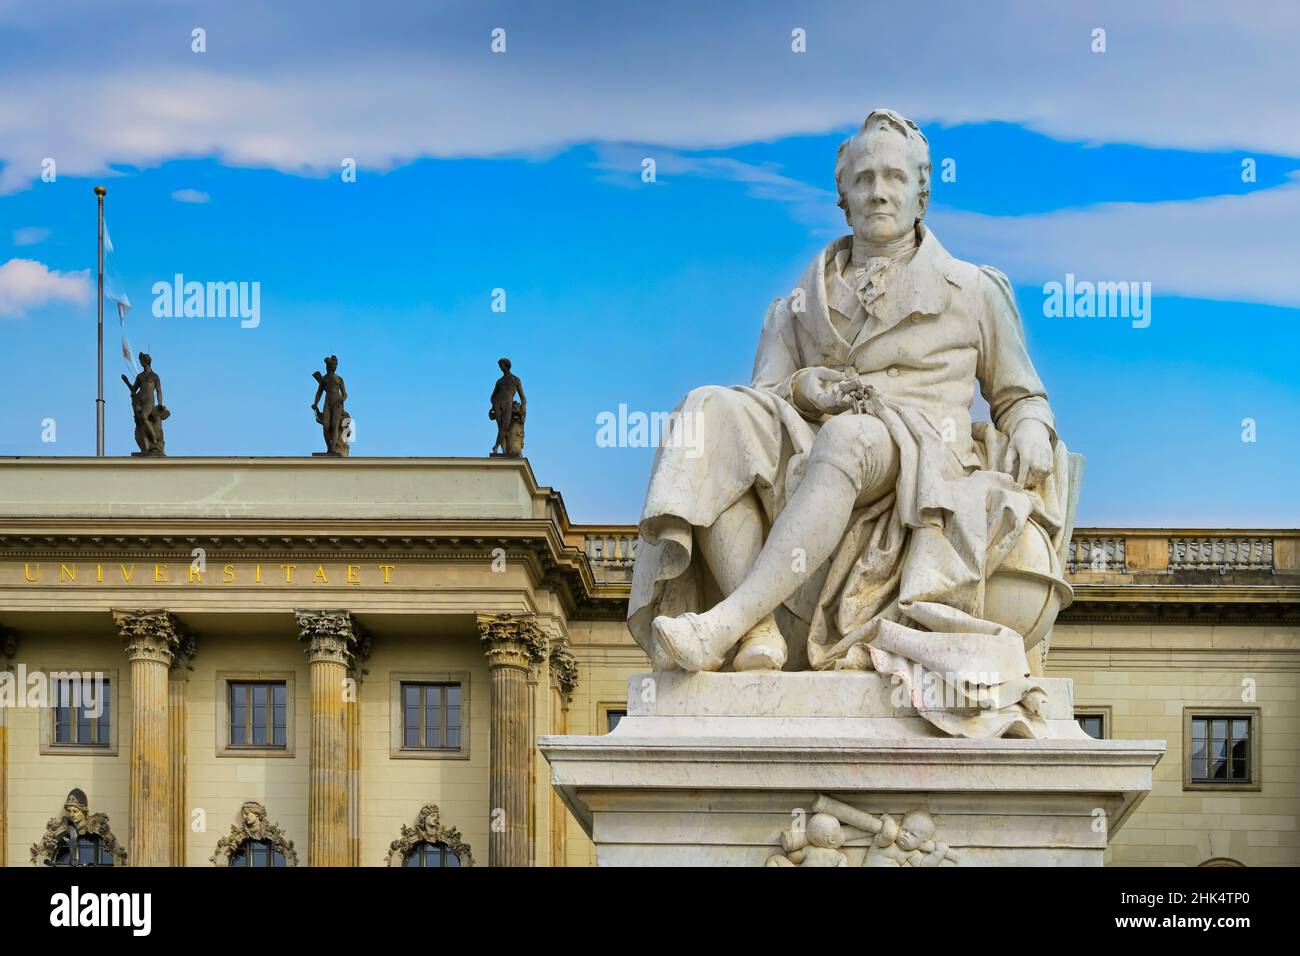 Humboldt University with Alexander von Humboldt statue, Unter den Linden, Berlin, Germany, Europe Stock Photo